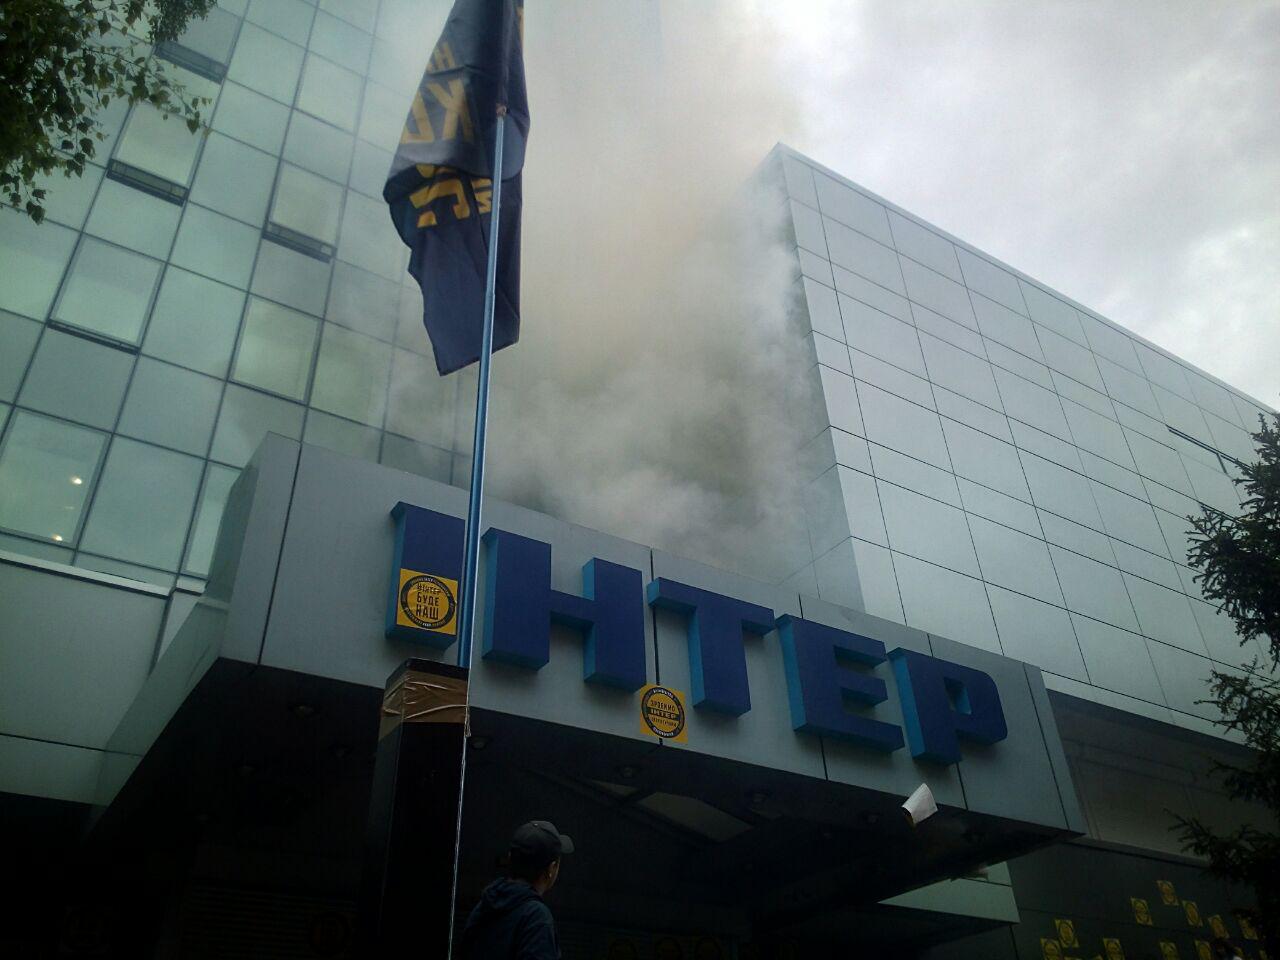 Офис "Интера в дыму", взрываются дымовые шашки: националисты из "Азова" выдвинули ультиматум телеканалу